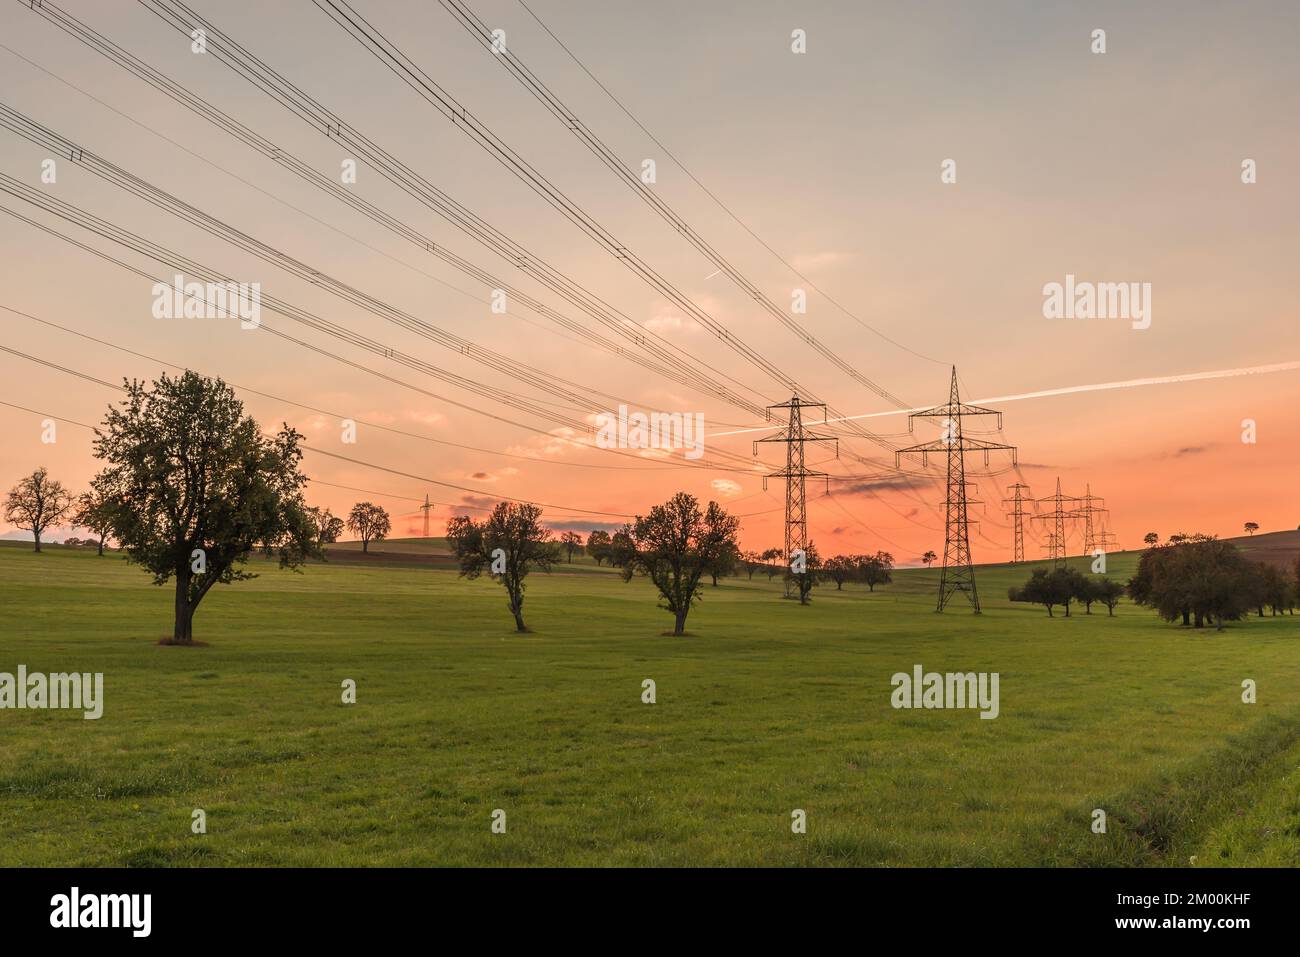 Hochspannungs-Strommasten und Stromleitungen auf einem Feld bei Sonnenuntergang. Stromerzeugung, Umweltfragen und Klimaschutzkonzept Stockfoto